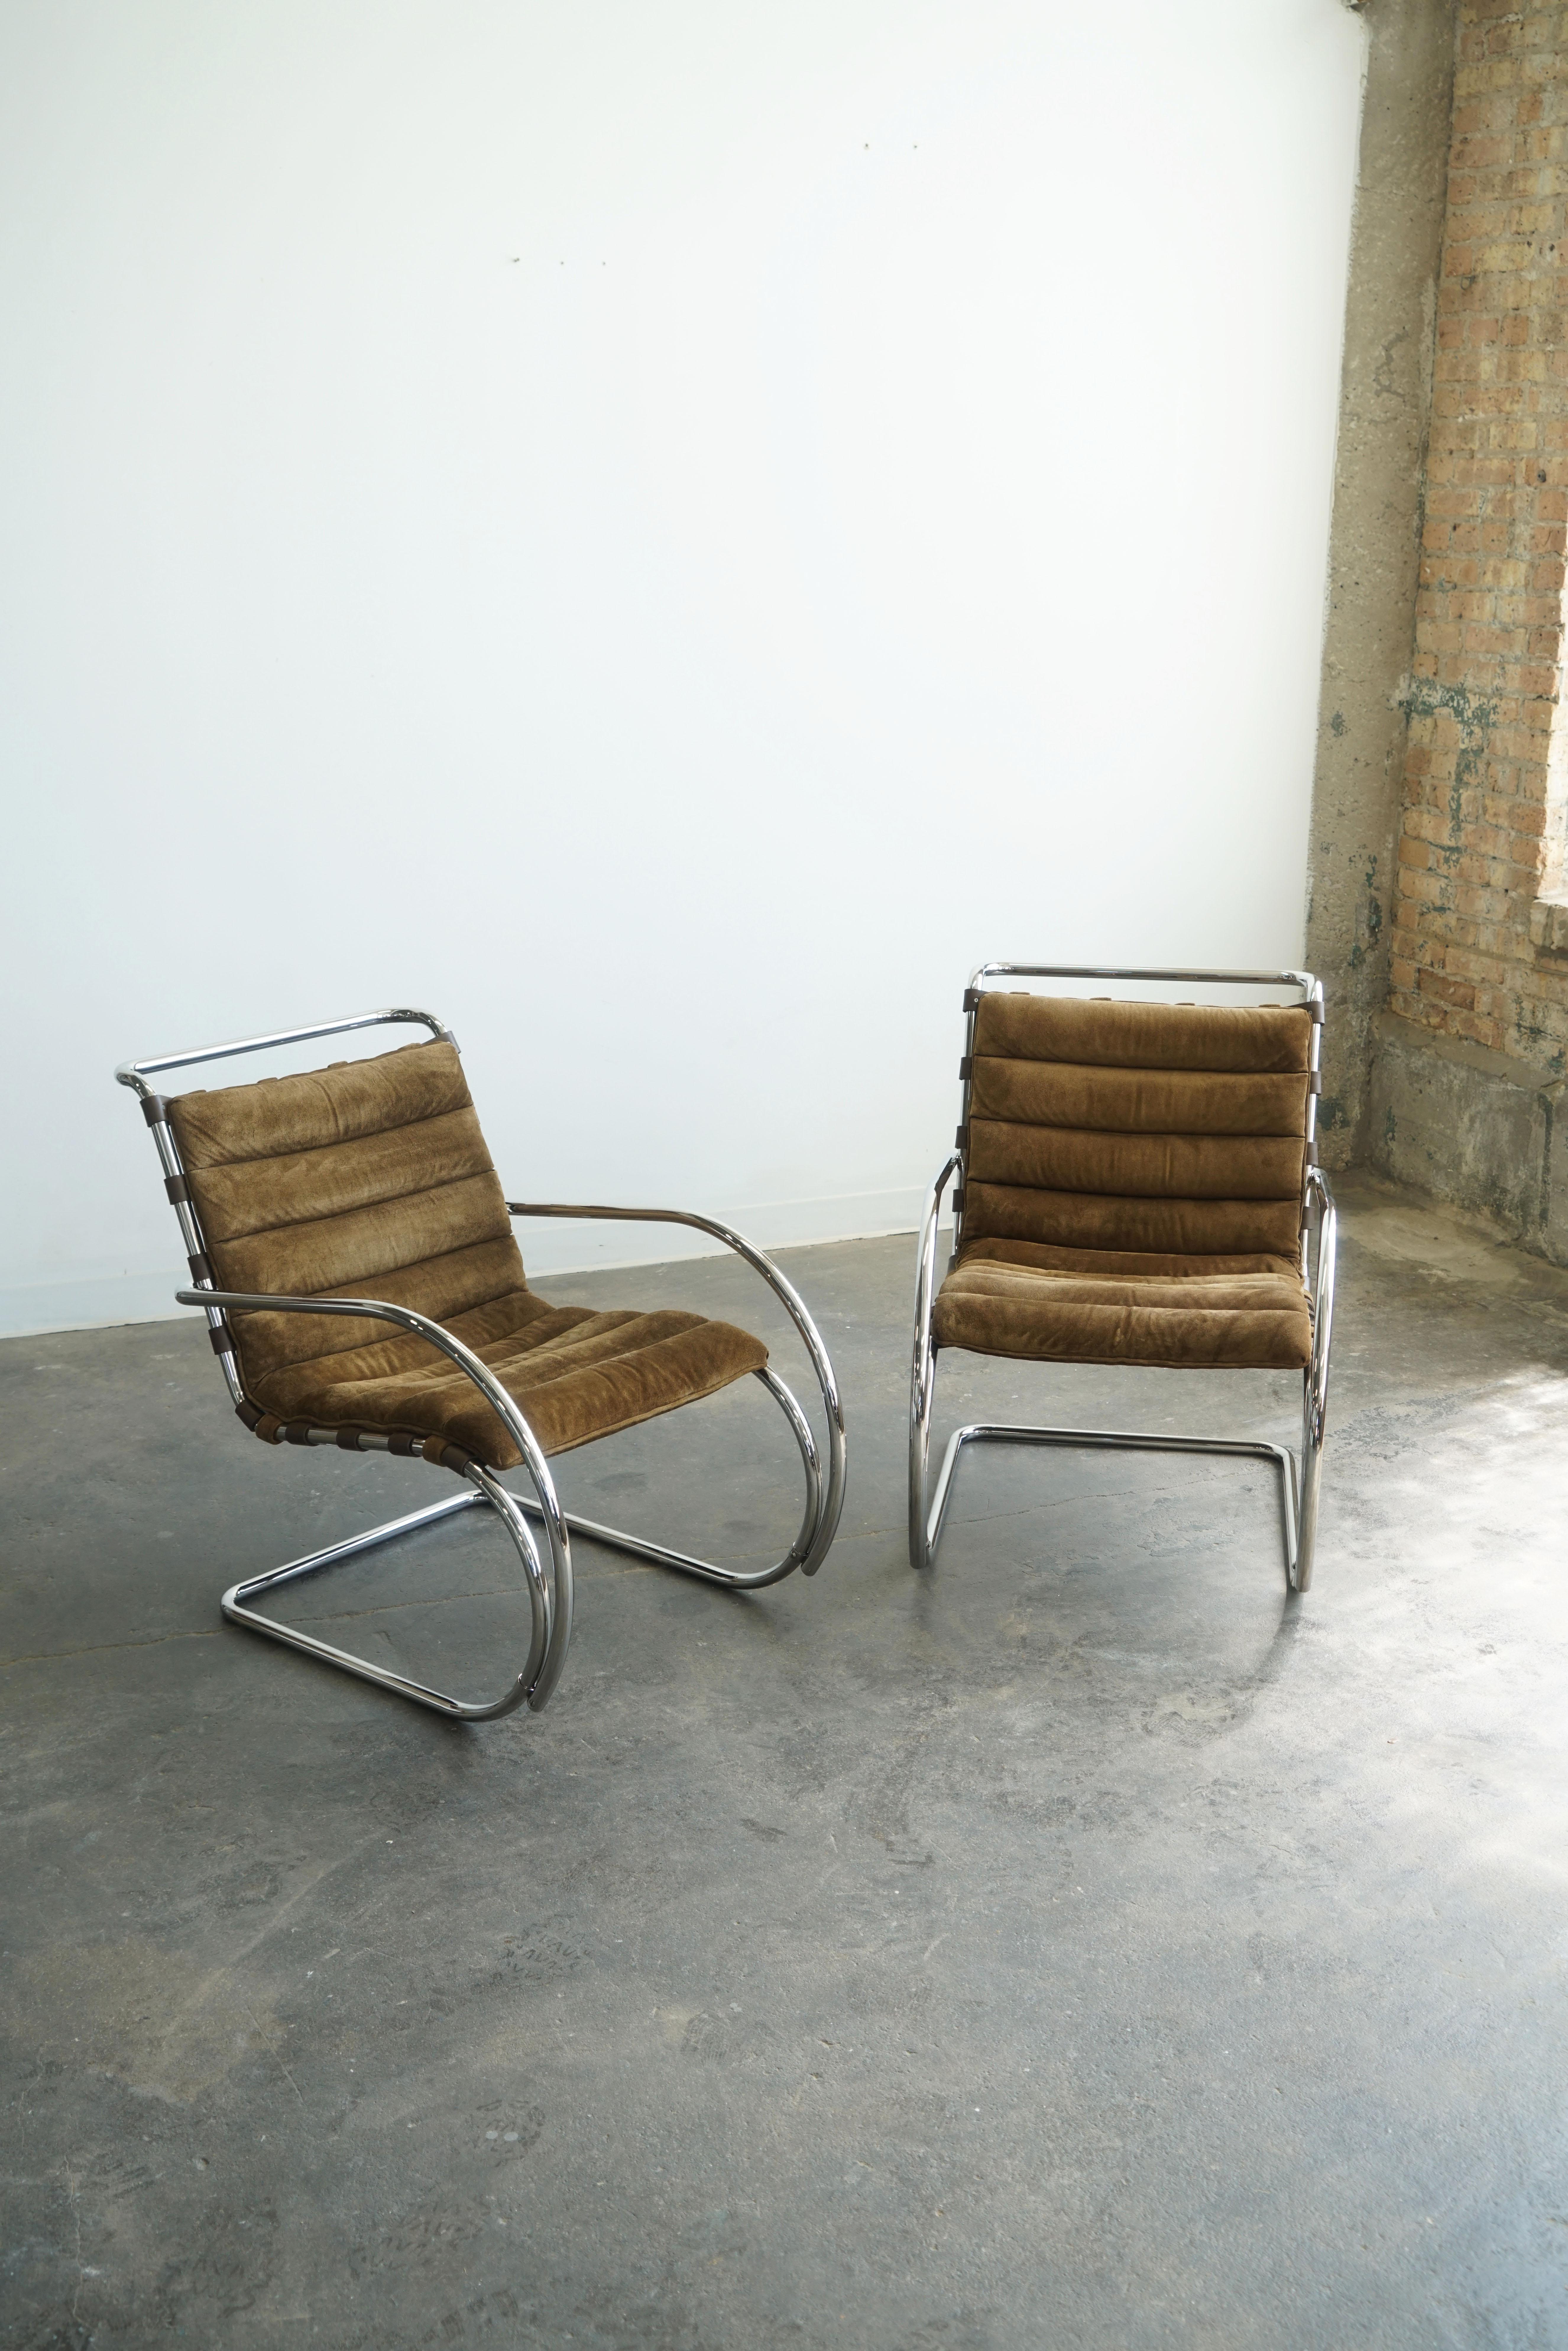 Ein Paar Mr. Lounge Chairs mit Armlehnen, entworfen von Mies Van Der Rohe für Knoll.
Sitzpolster aus braunem Wildleder / Gestell aus Chromstahlrohr
Lederriemen 
Etiketten des Herstellers Knoll aus: November 1982
Der Entwurf stammt aus dem Jahr